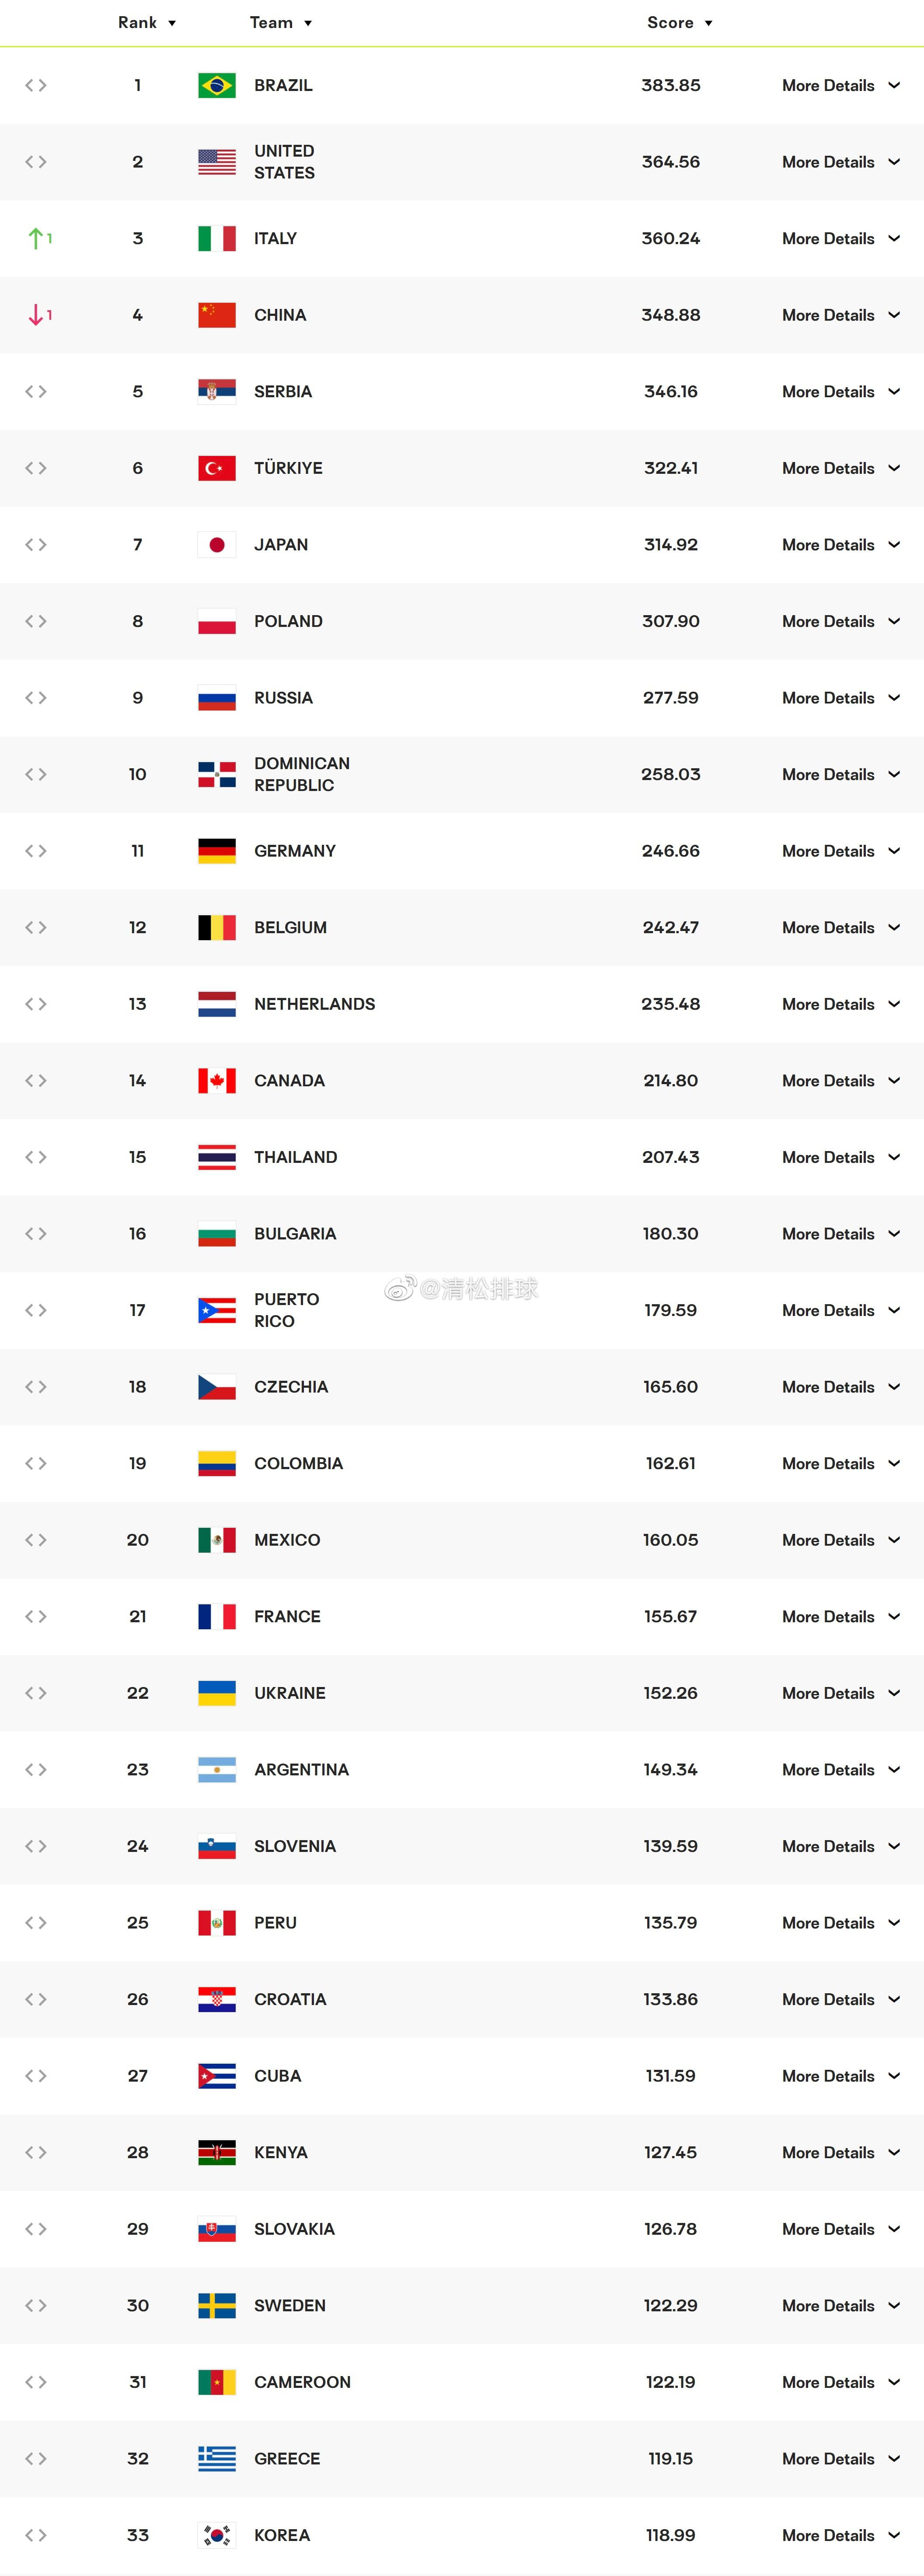 国际排联最新女排世界排名中国女排348.88分暂列第4巴西女排383.85分暂列